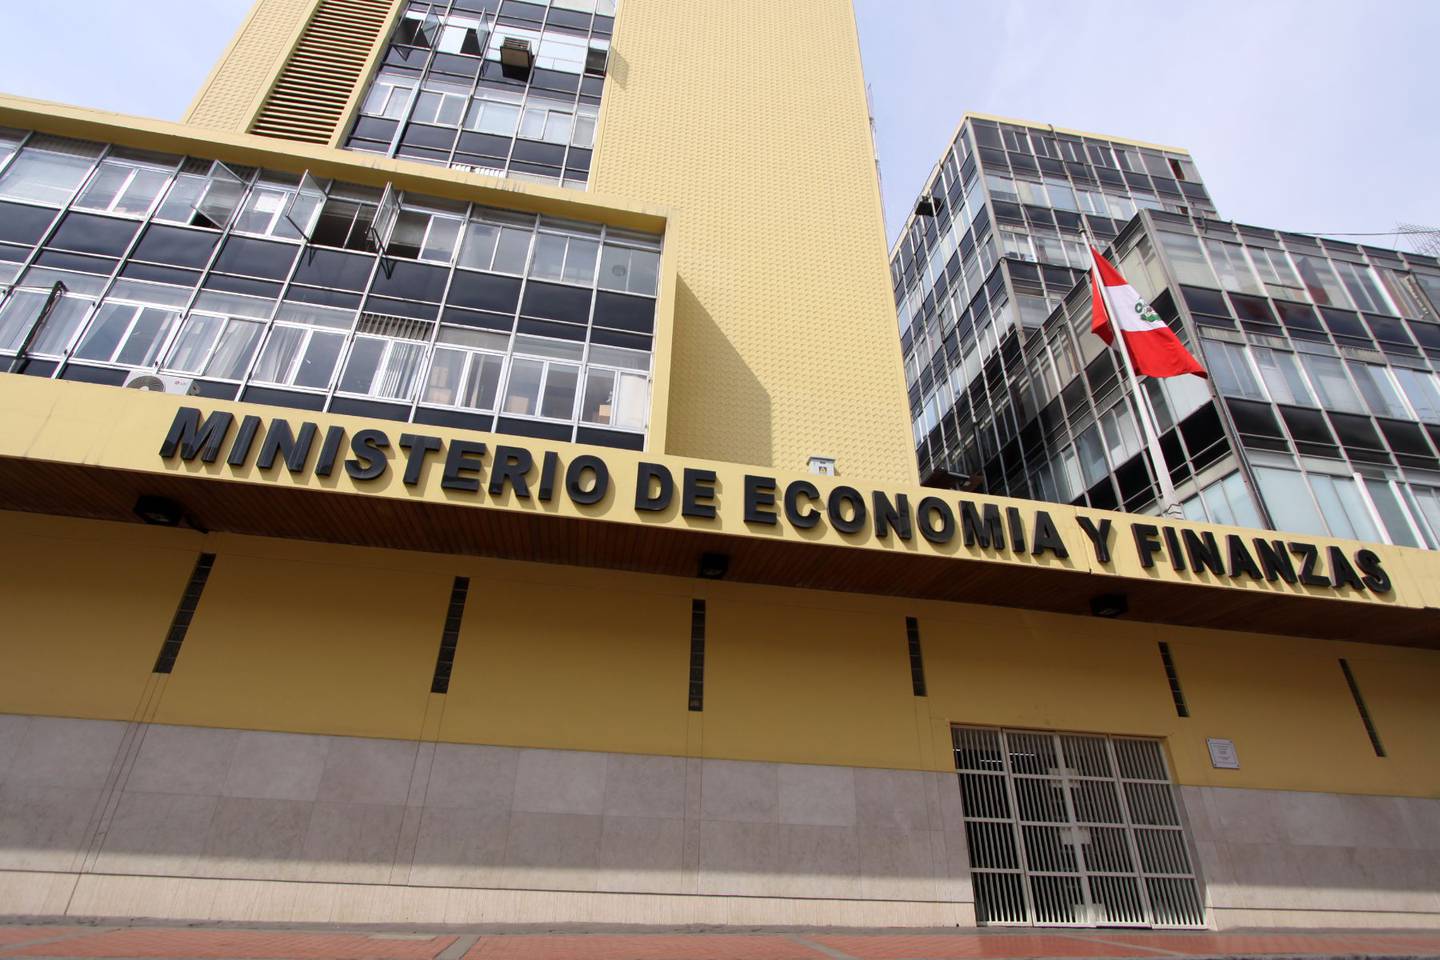 Antes de que termine agosto el Ministerio de Economía y Finanzas de Perú (MEF) debe concluir el presupuesto público para el 2023. Además, pronto se emitirá el marco macroeconómico 2023 - 2026.dfd